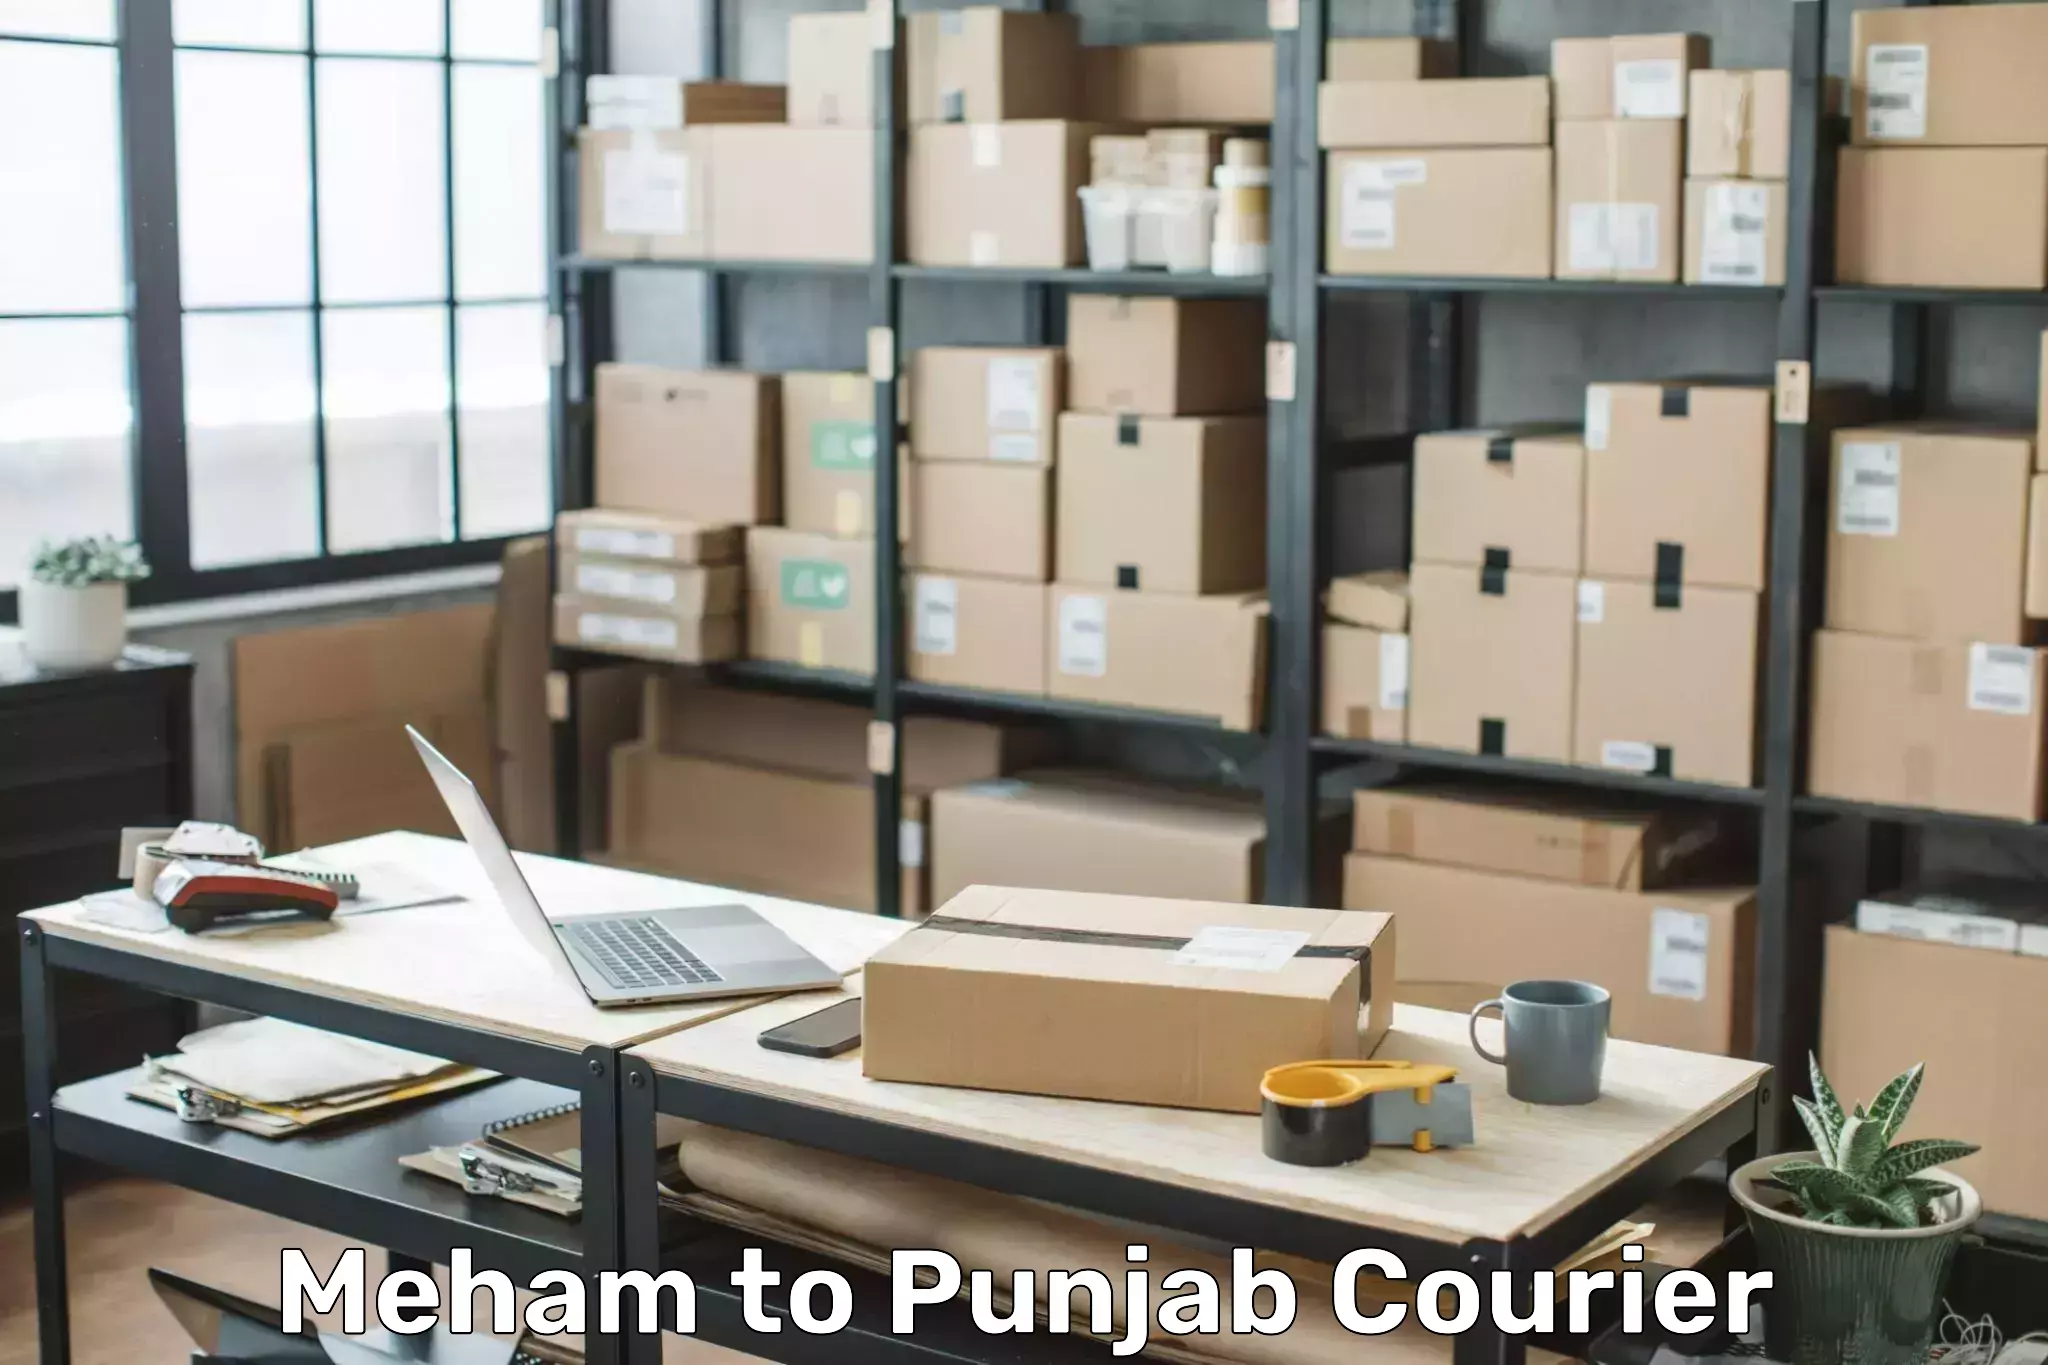 Luggage delivery optimization Meham to Central University of Punjab Bathinda